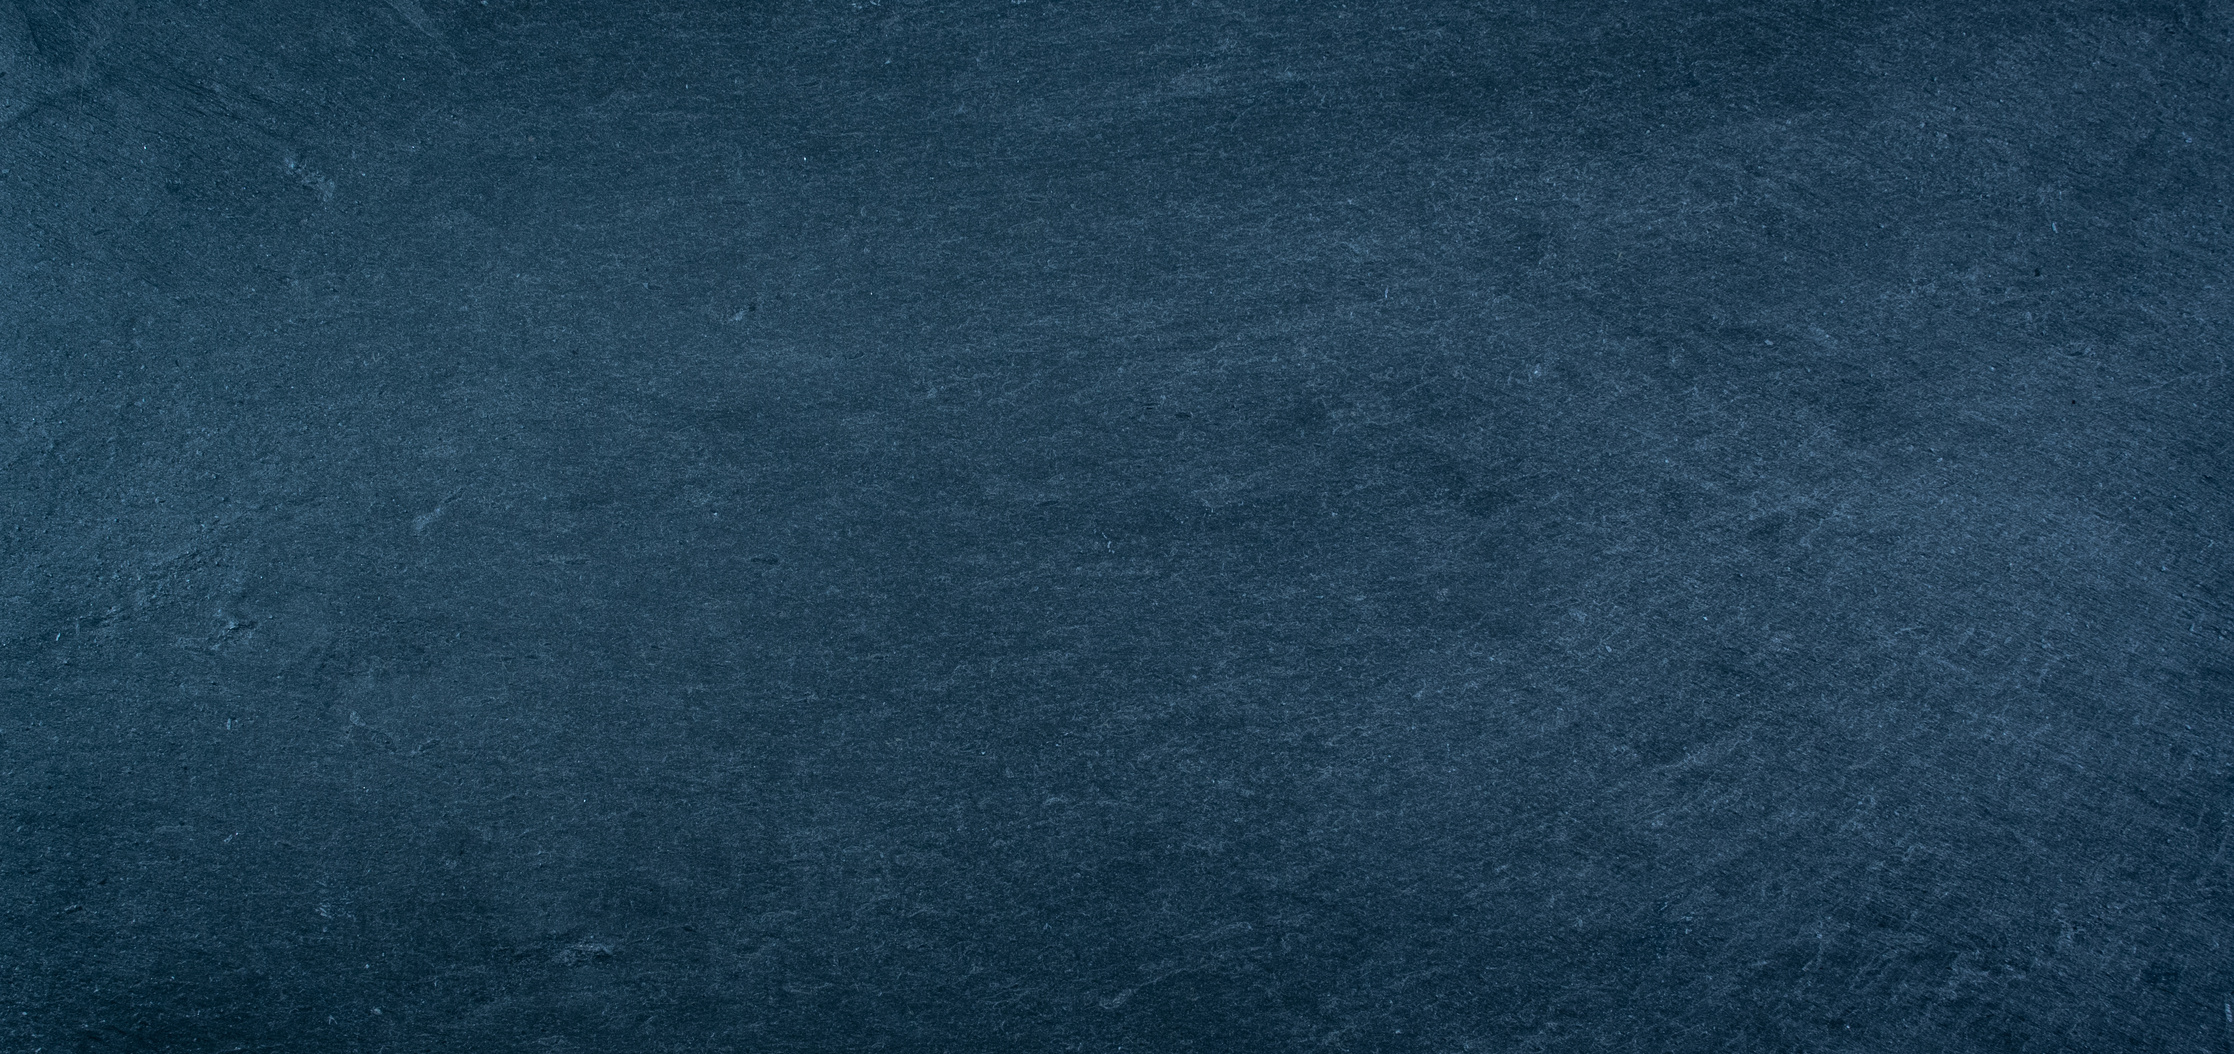 Dark blue slate texture background.